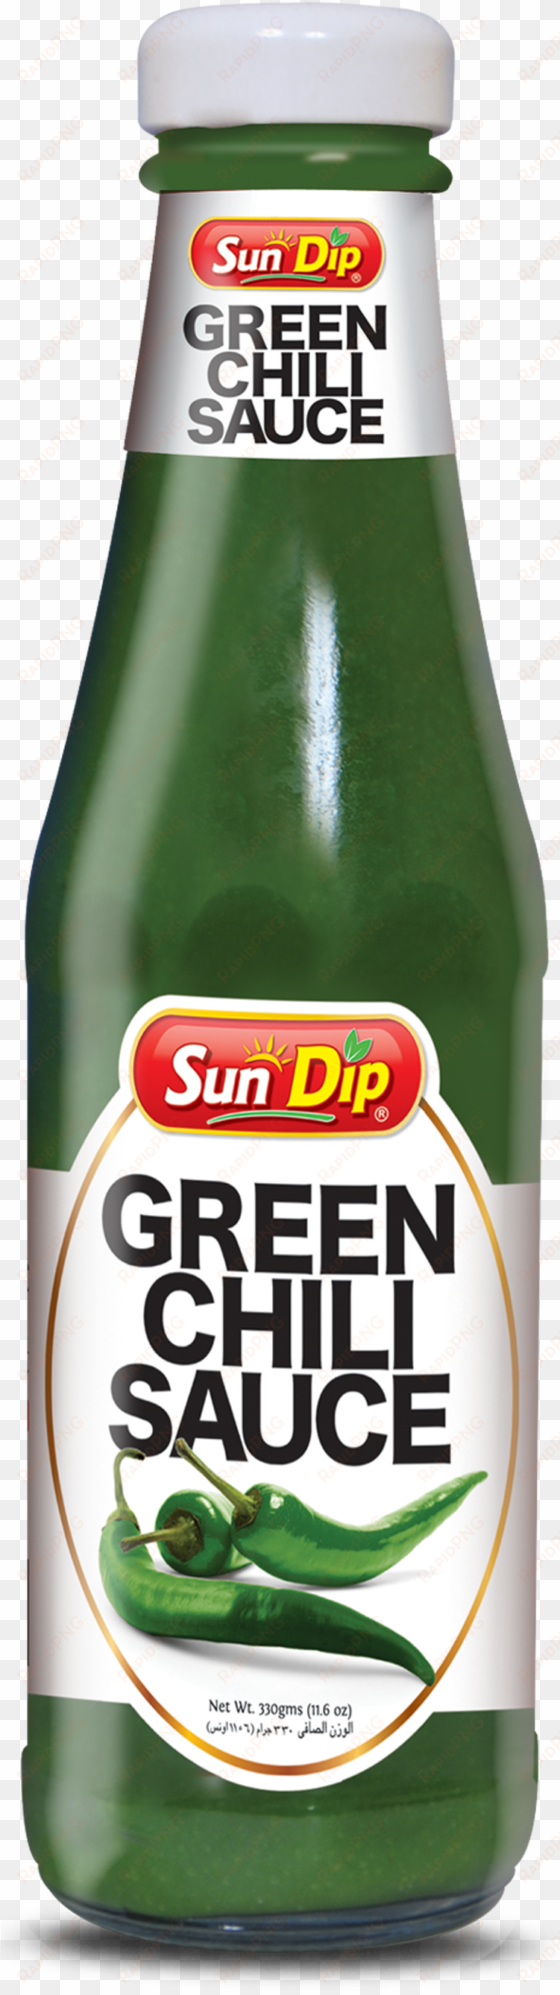 sundip green chilli sauce